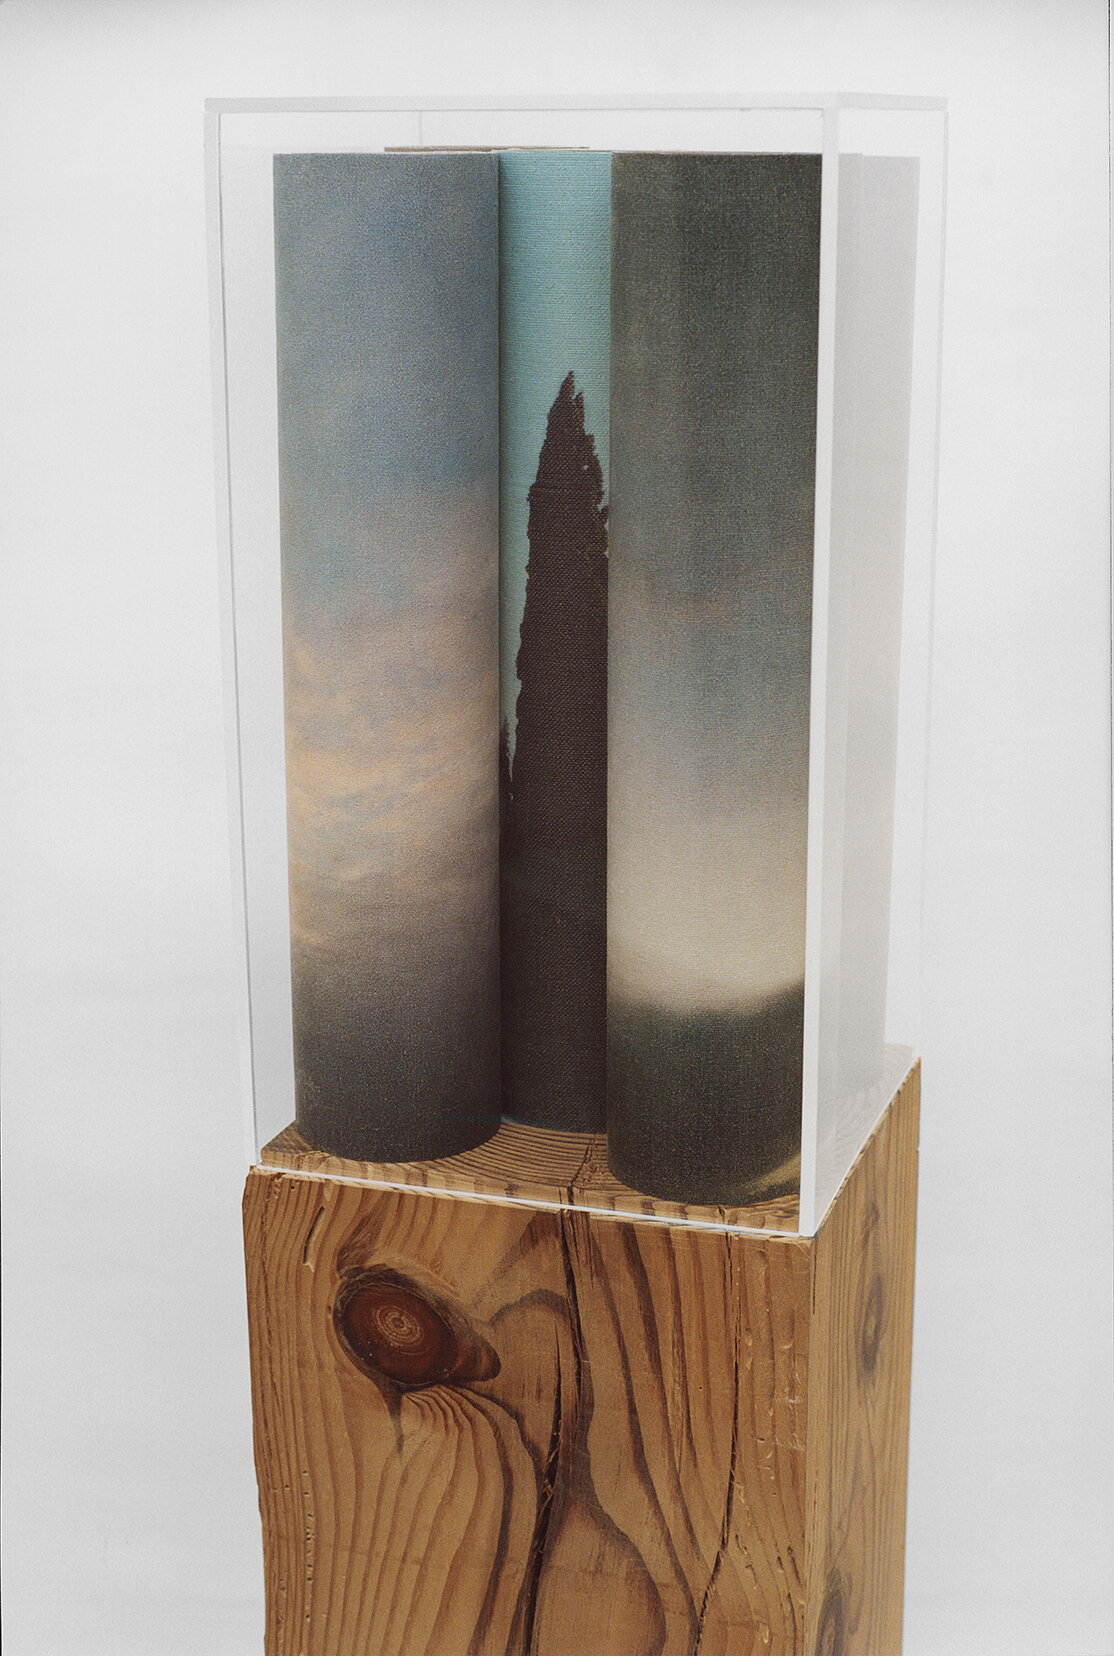  Efímera estación, 1999, Print on canvas, wood and plexiglass, 64.1 x 9 x 9 inches / 163 x 23 x 23 cm 